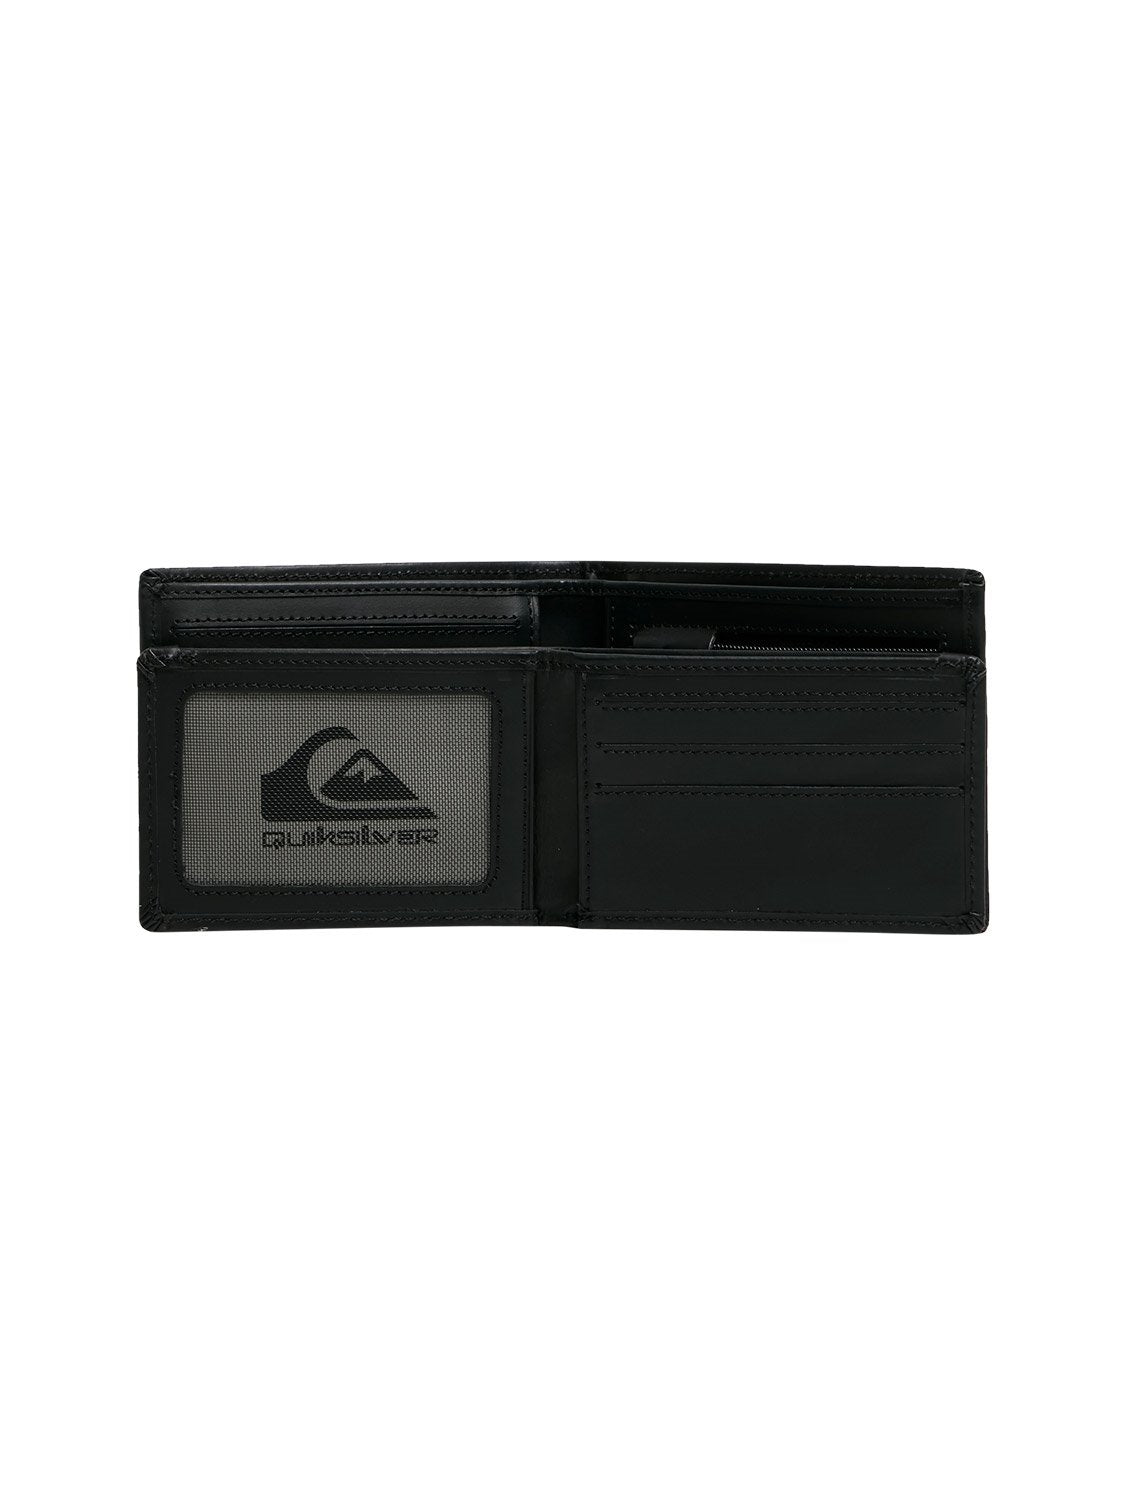 Quiksilver Men's Gutherie IV Bi-Fold Wallet